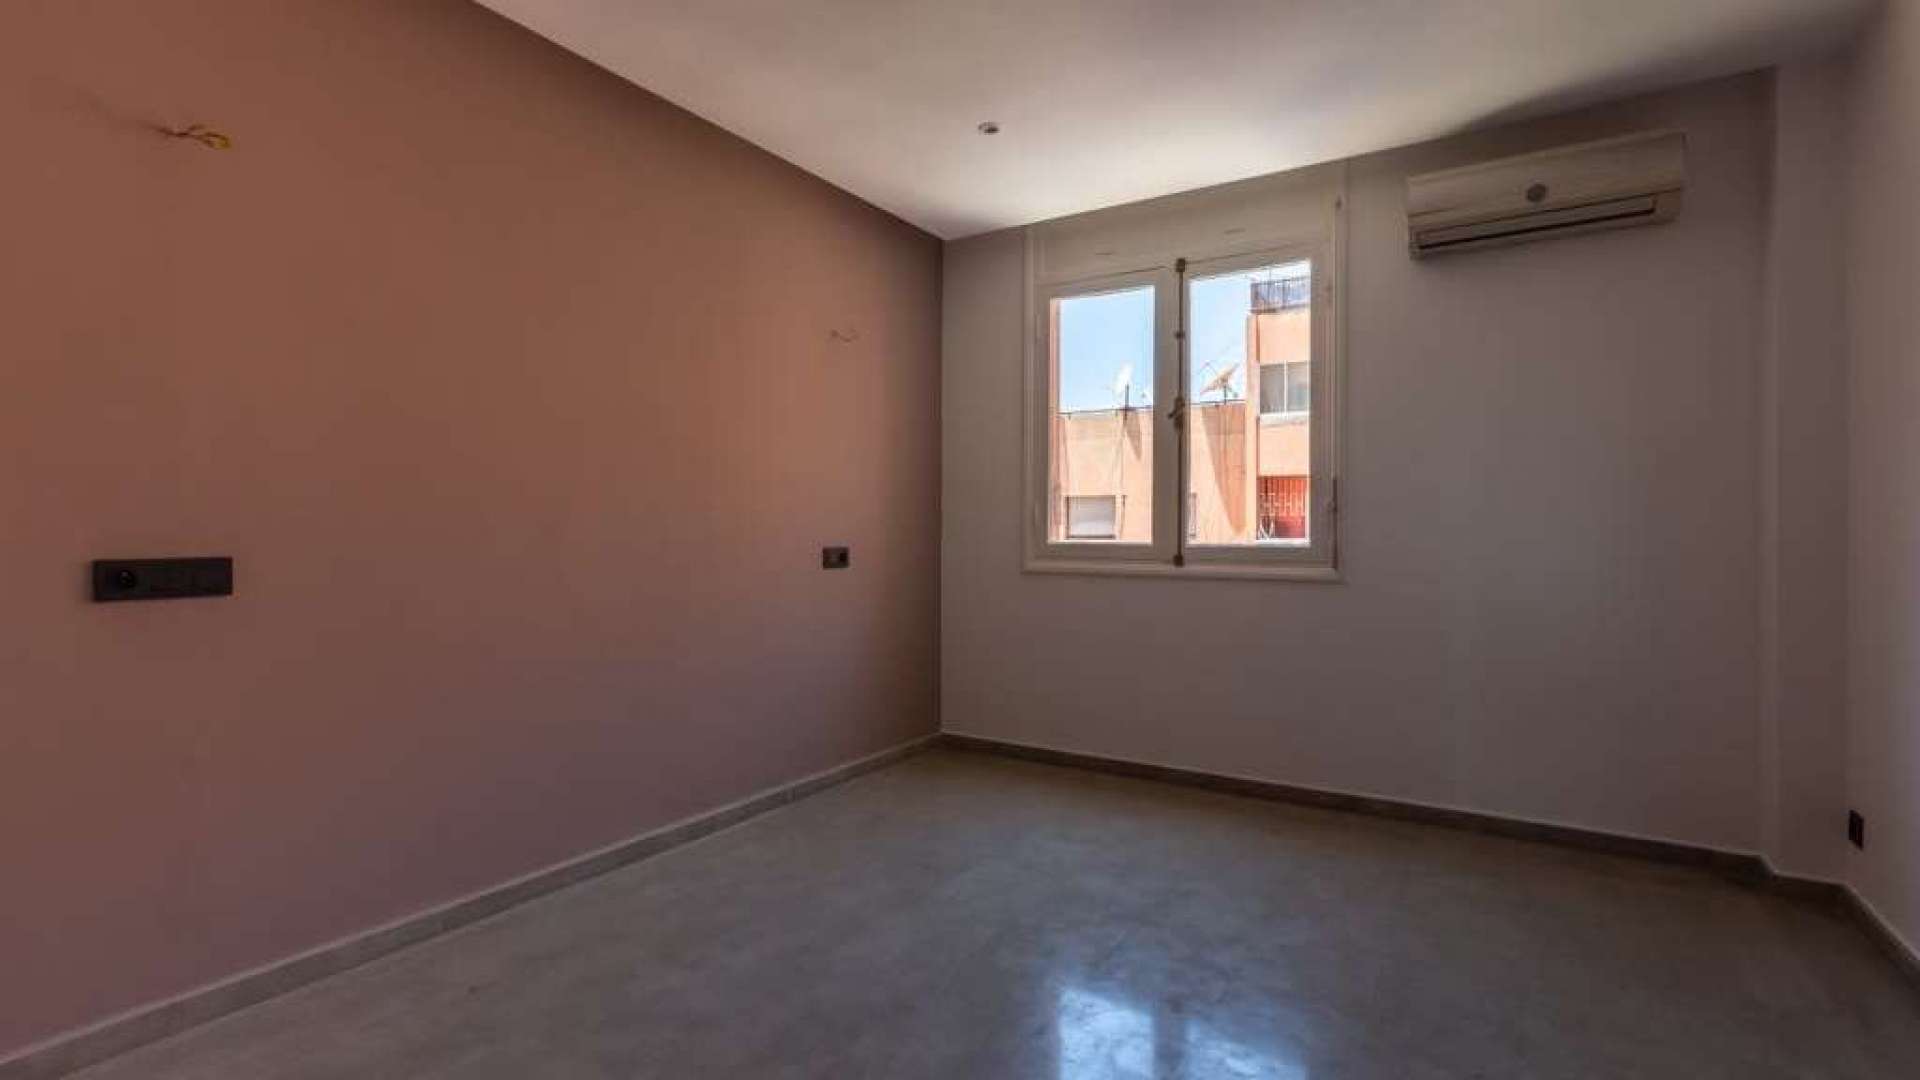 Vente,Appartement,Appartement vide T3 à Majorelles refait à Neuf,Marrakech,Majorelles